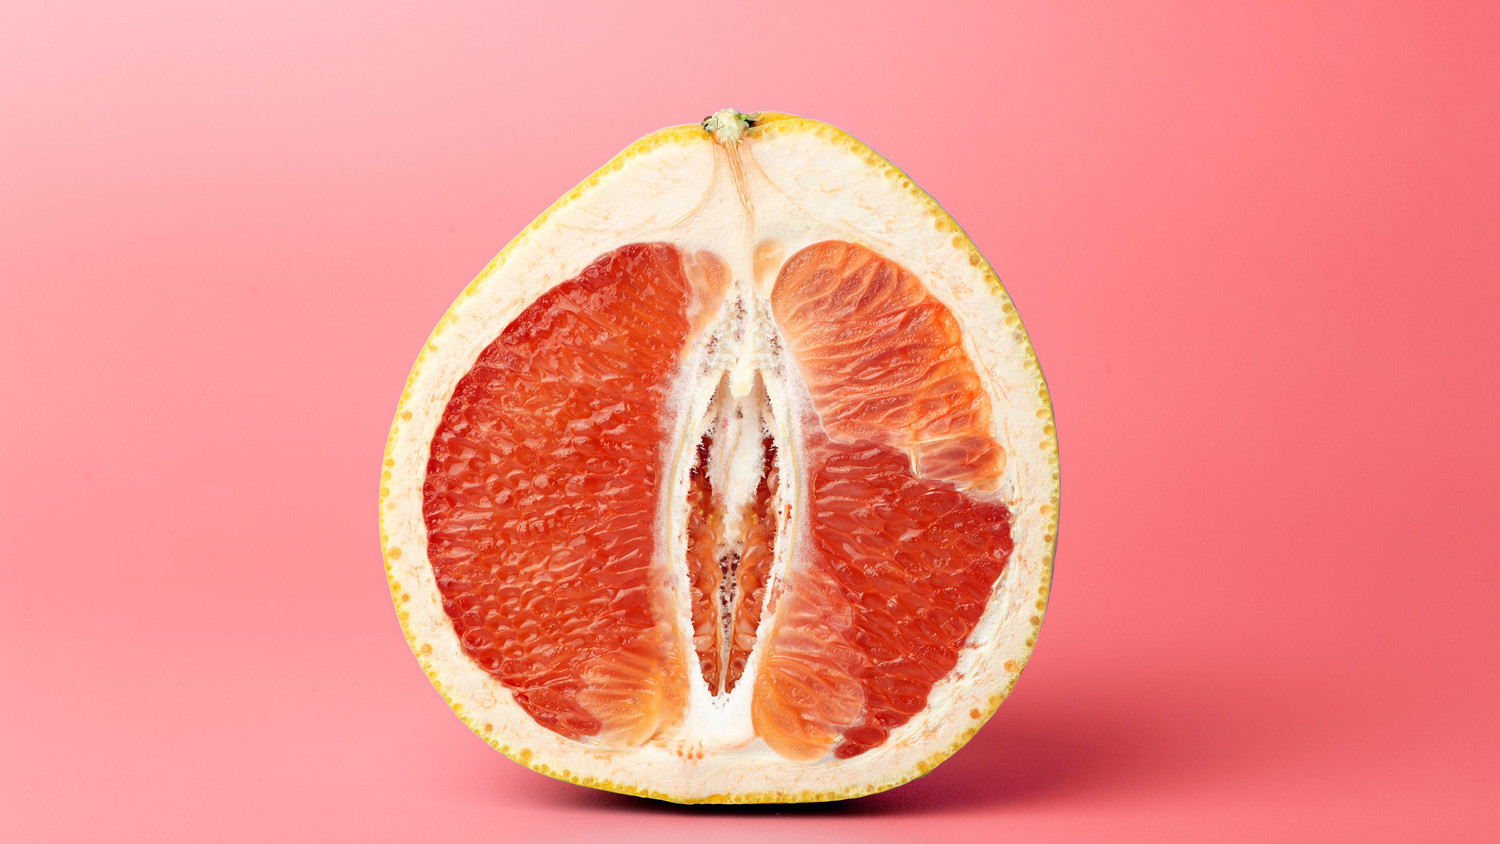 Der Länge nach halbierte Grapefruit. Der vertikal verlaufende Hohlraum zwischen den zwei sichtbaren Segmenten erinnert an eine Vulva. Der Kontrast zwischen dem saftig-roten Fruchtfleisch und den feinen weissen Häutchen und Häärchen verstärkt die Assoziation.